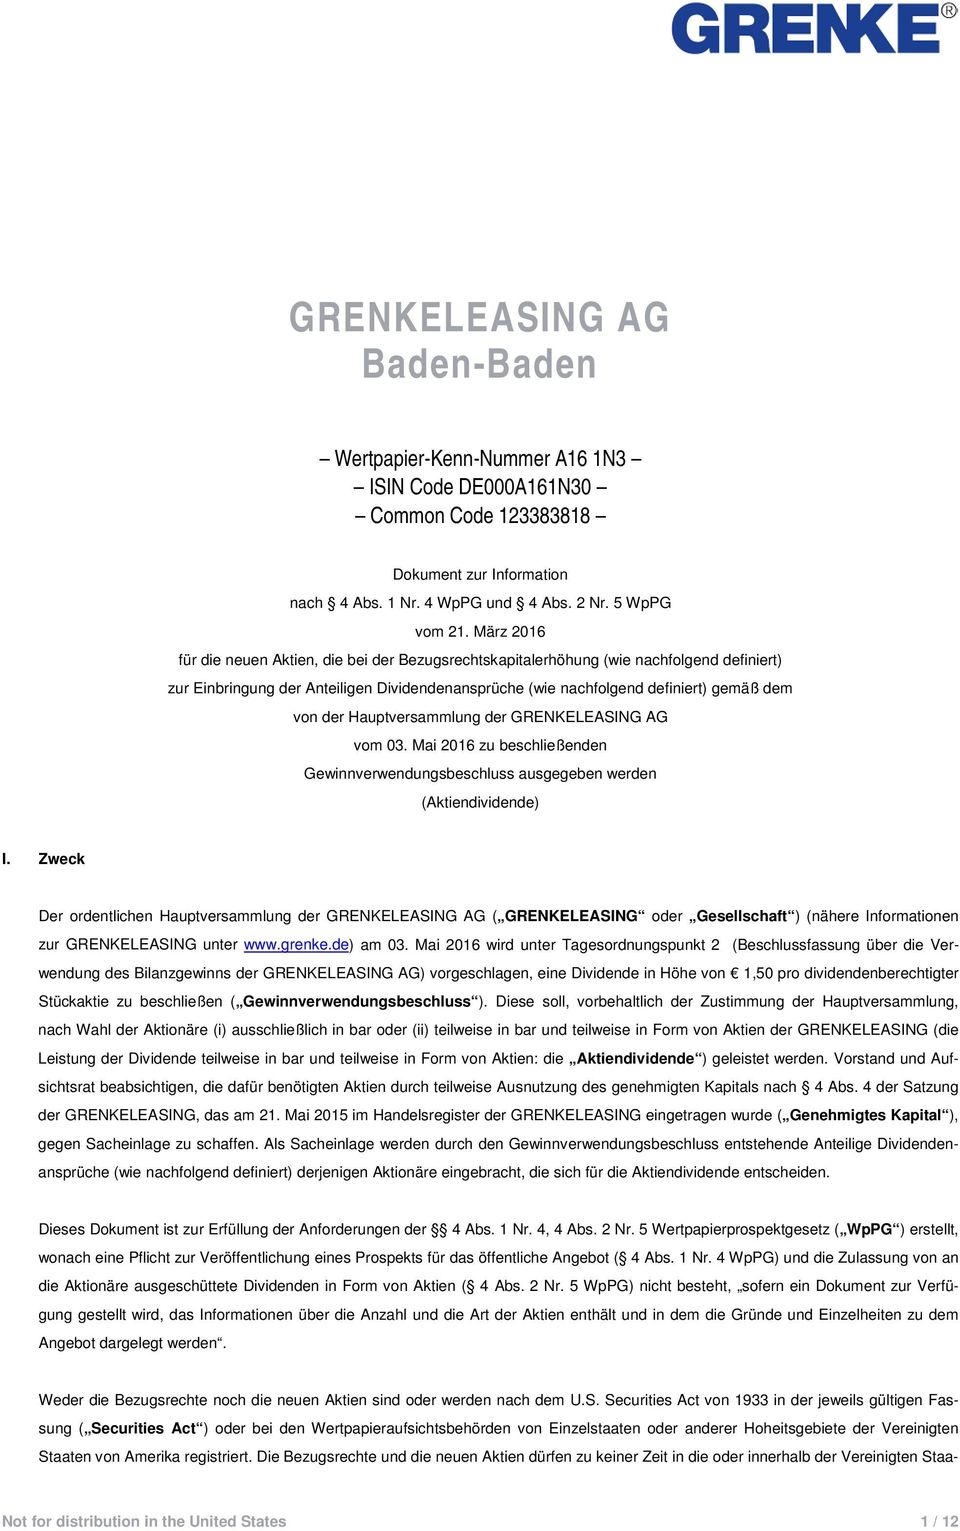 Hauptversammlung der GRENKELEASING AG vom 03. Mai 2016 zu beschließenden Gewinnverwendungsbeschluss ausgegeben werden (Aktiendividende) I.